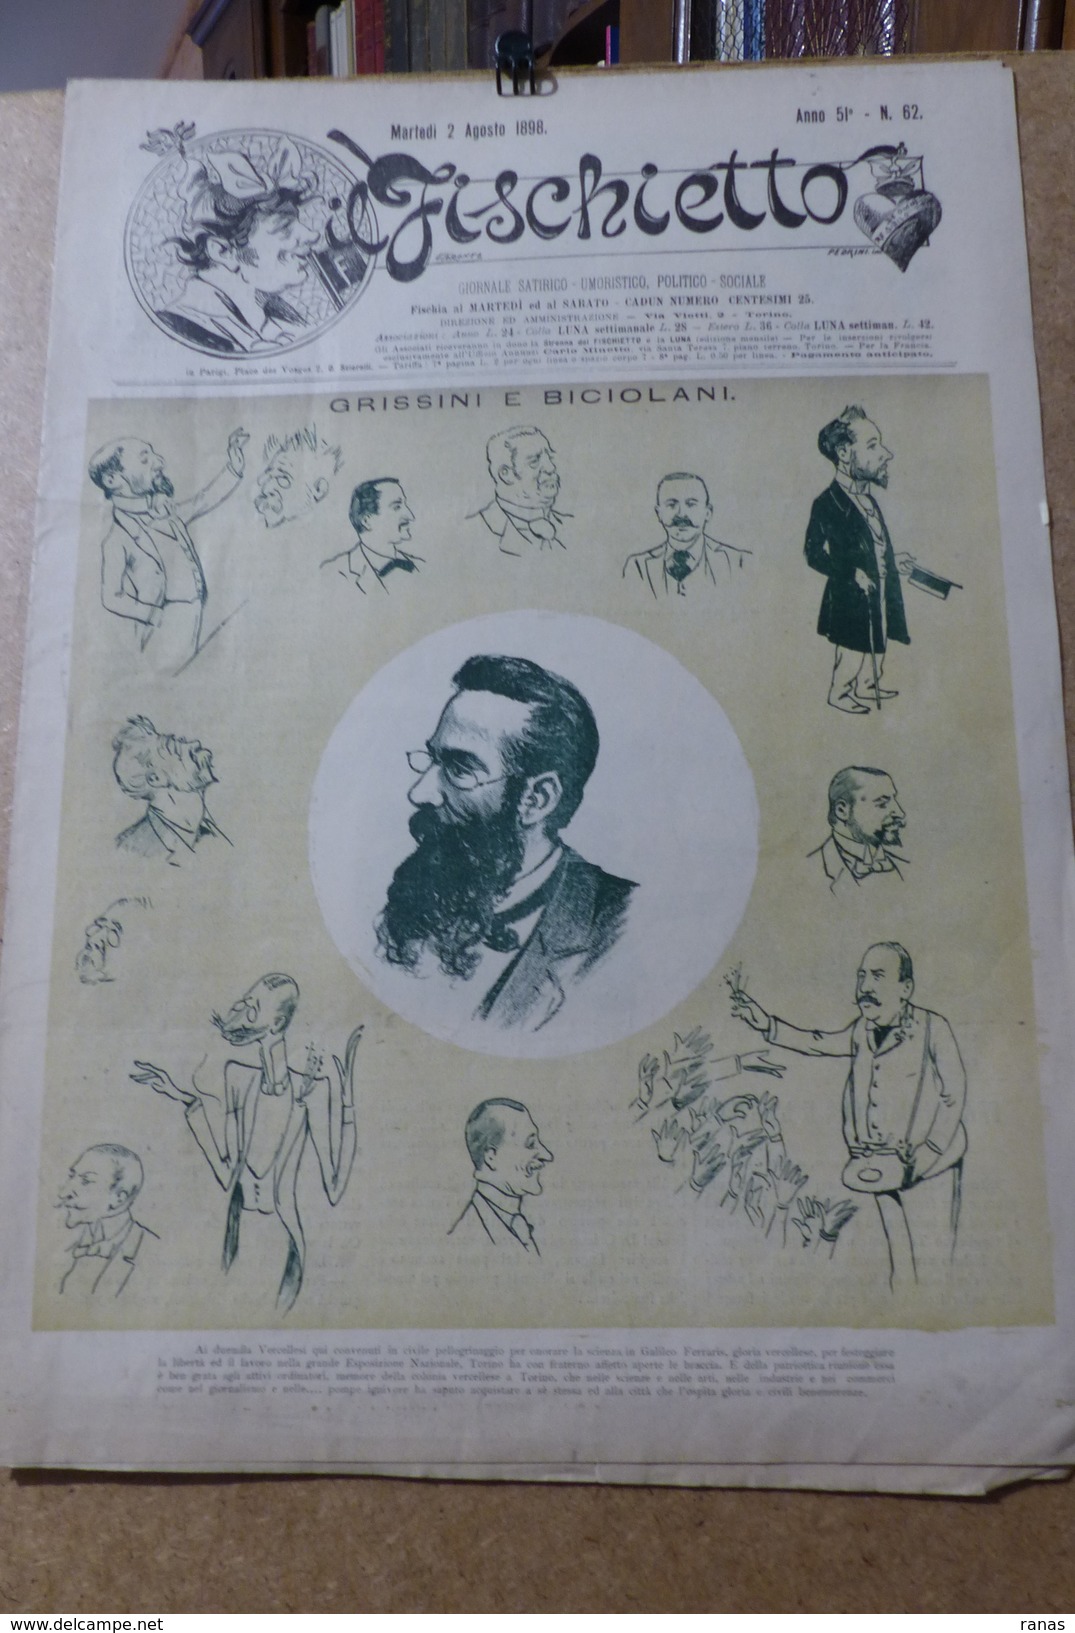 Revue Journal Fischietto Satirique Caricature 38 X 27 Germany Allemagne Bismarck N° 62 De 1898 - 1850 - 1899